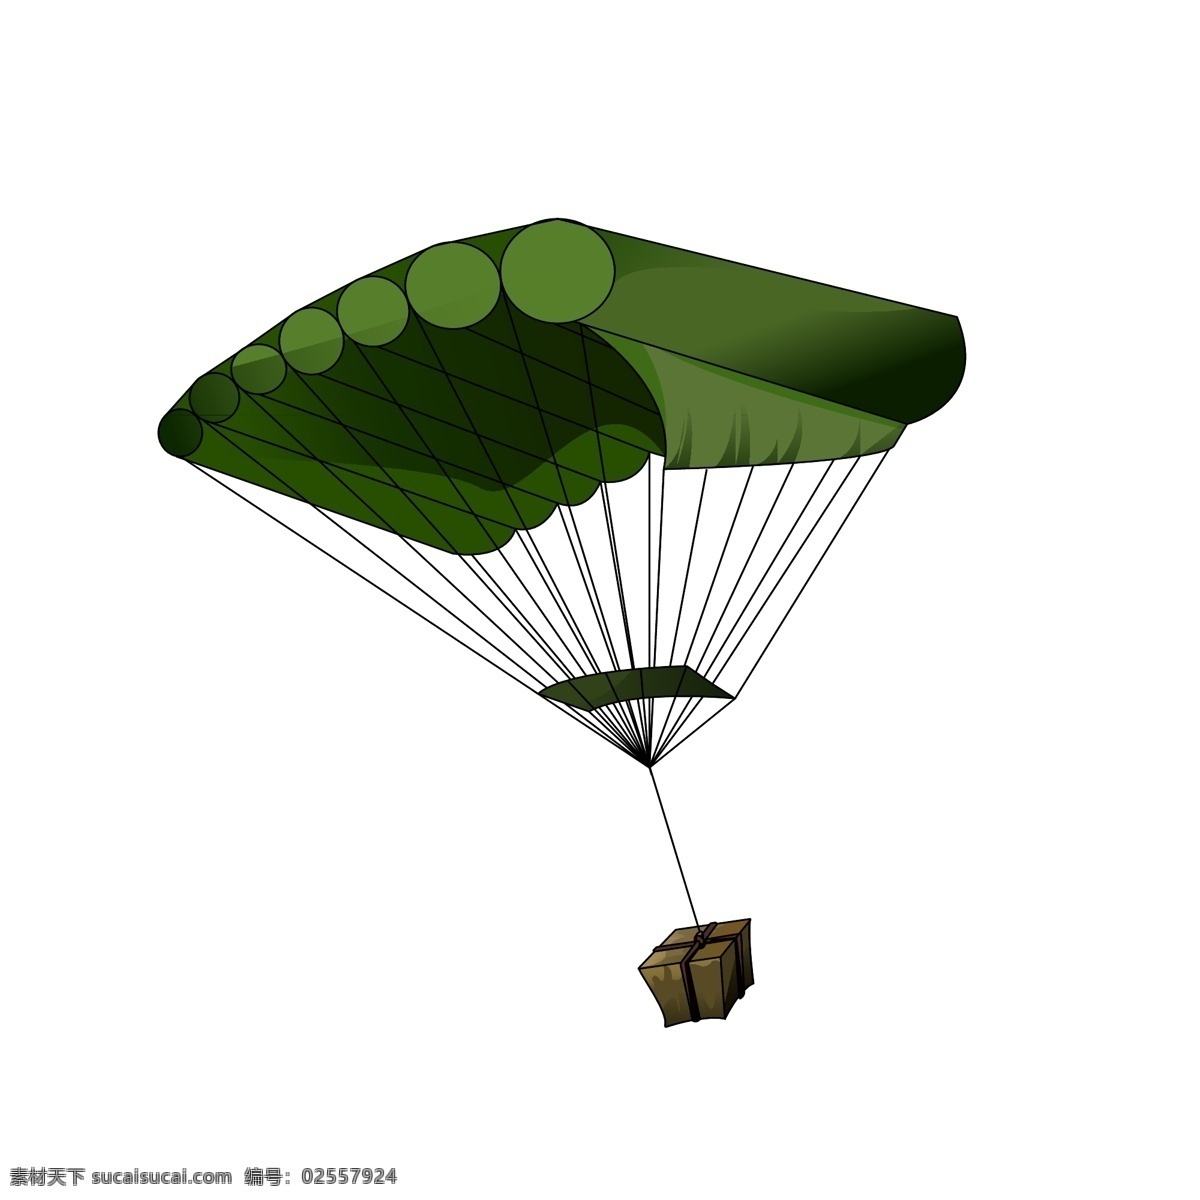 空投 绿色 降落伞 游戏 配 图 游戏配图 手绘